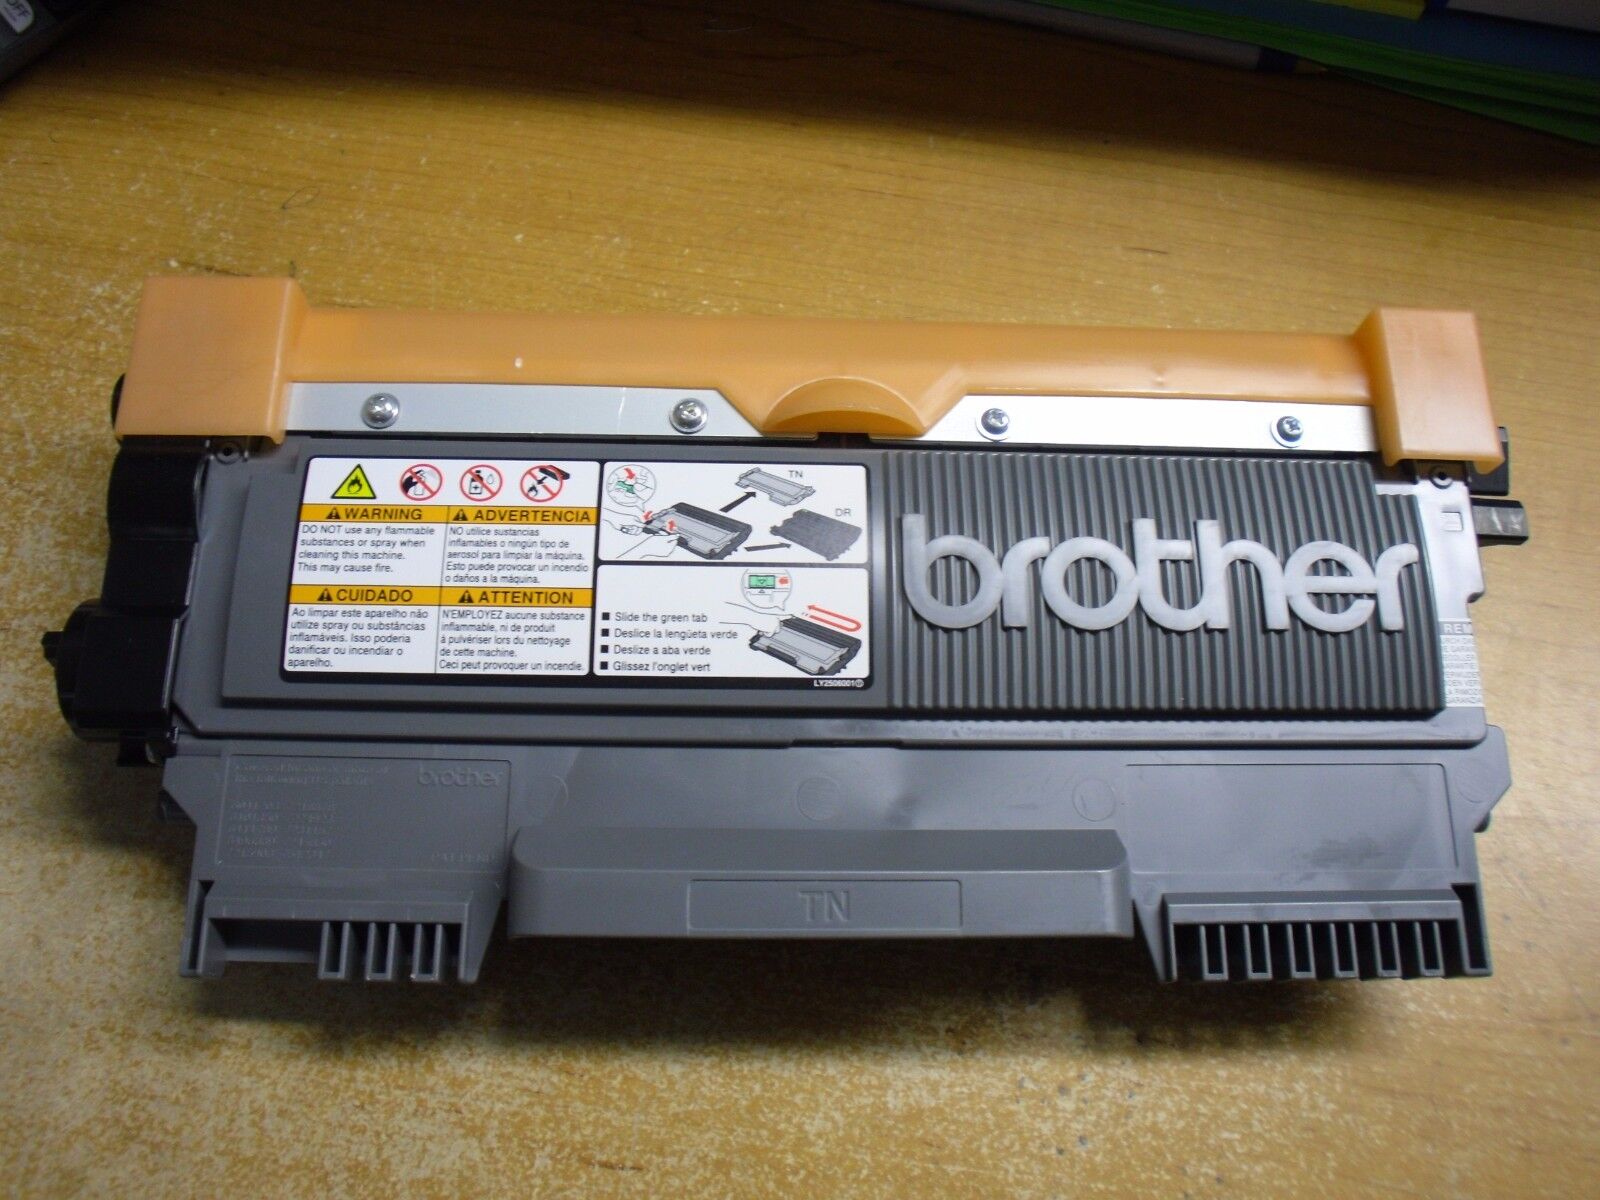 Genuine Brother HL-2220 HL2280 HL-2240 HL-2270DW TN420 Toner Cartridges HL-2230D